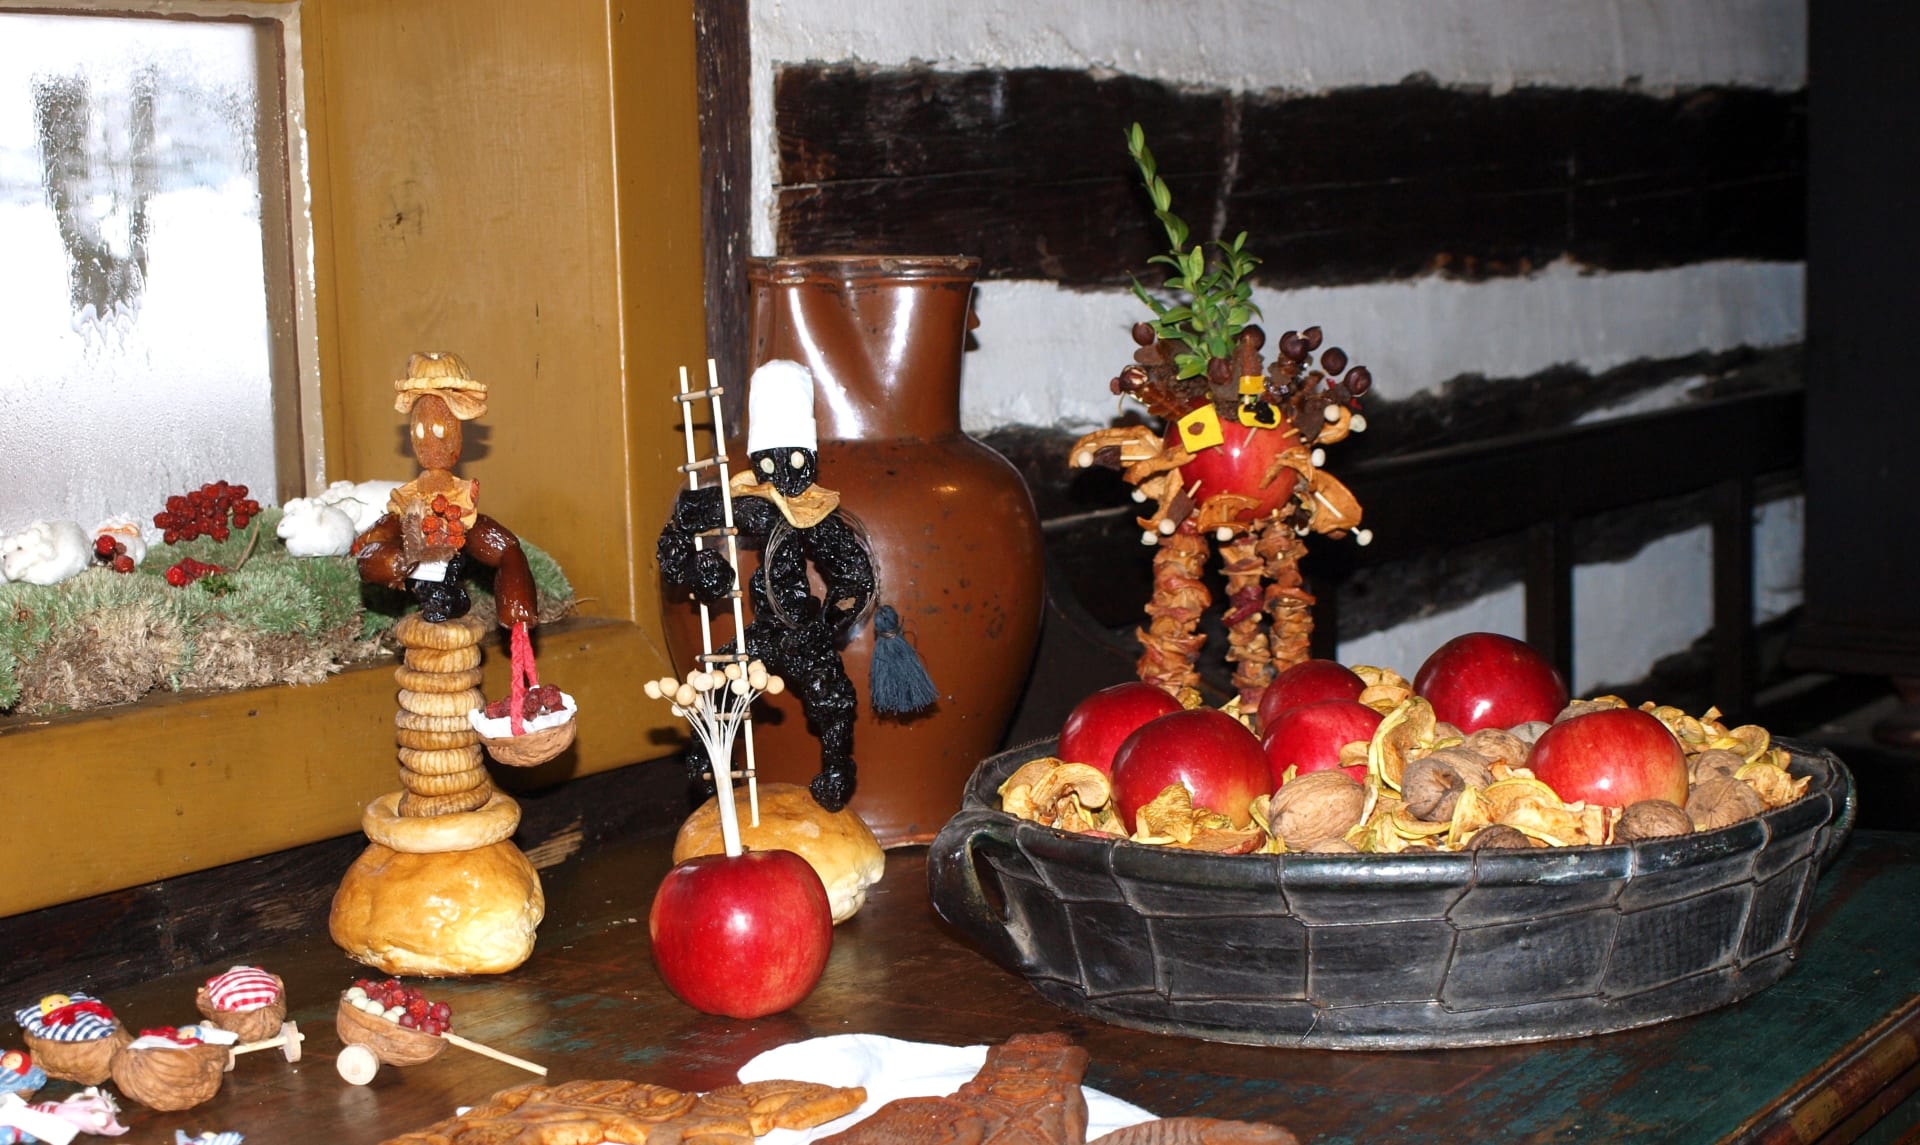 Historie štědrovečerní večeře: Na tradičním vánočním stole mělo své pevné místo ovoce, které představovalo svornost rodiny. Bylo buď čerstvé, sušené, vařené i jinak upravené.